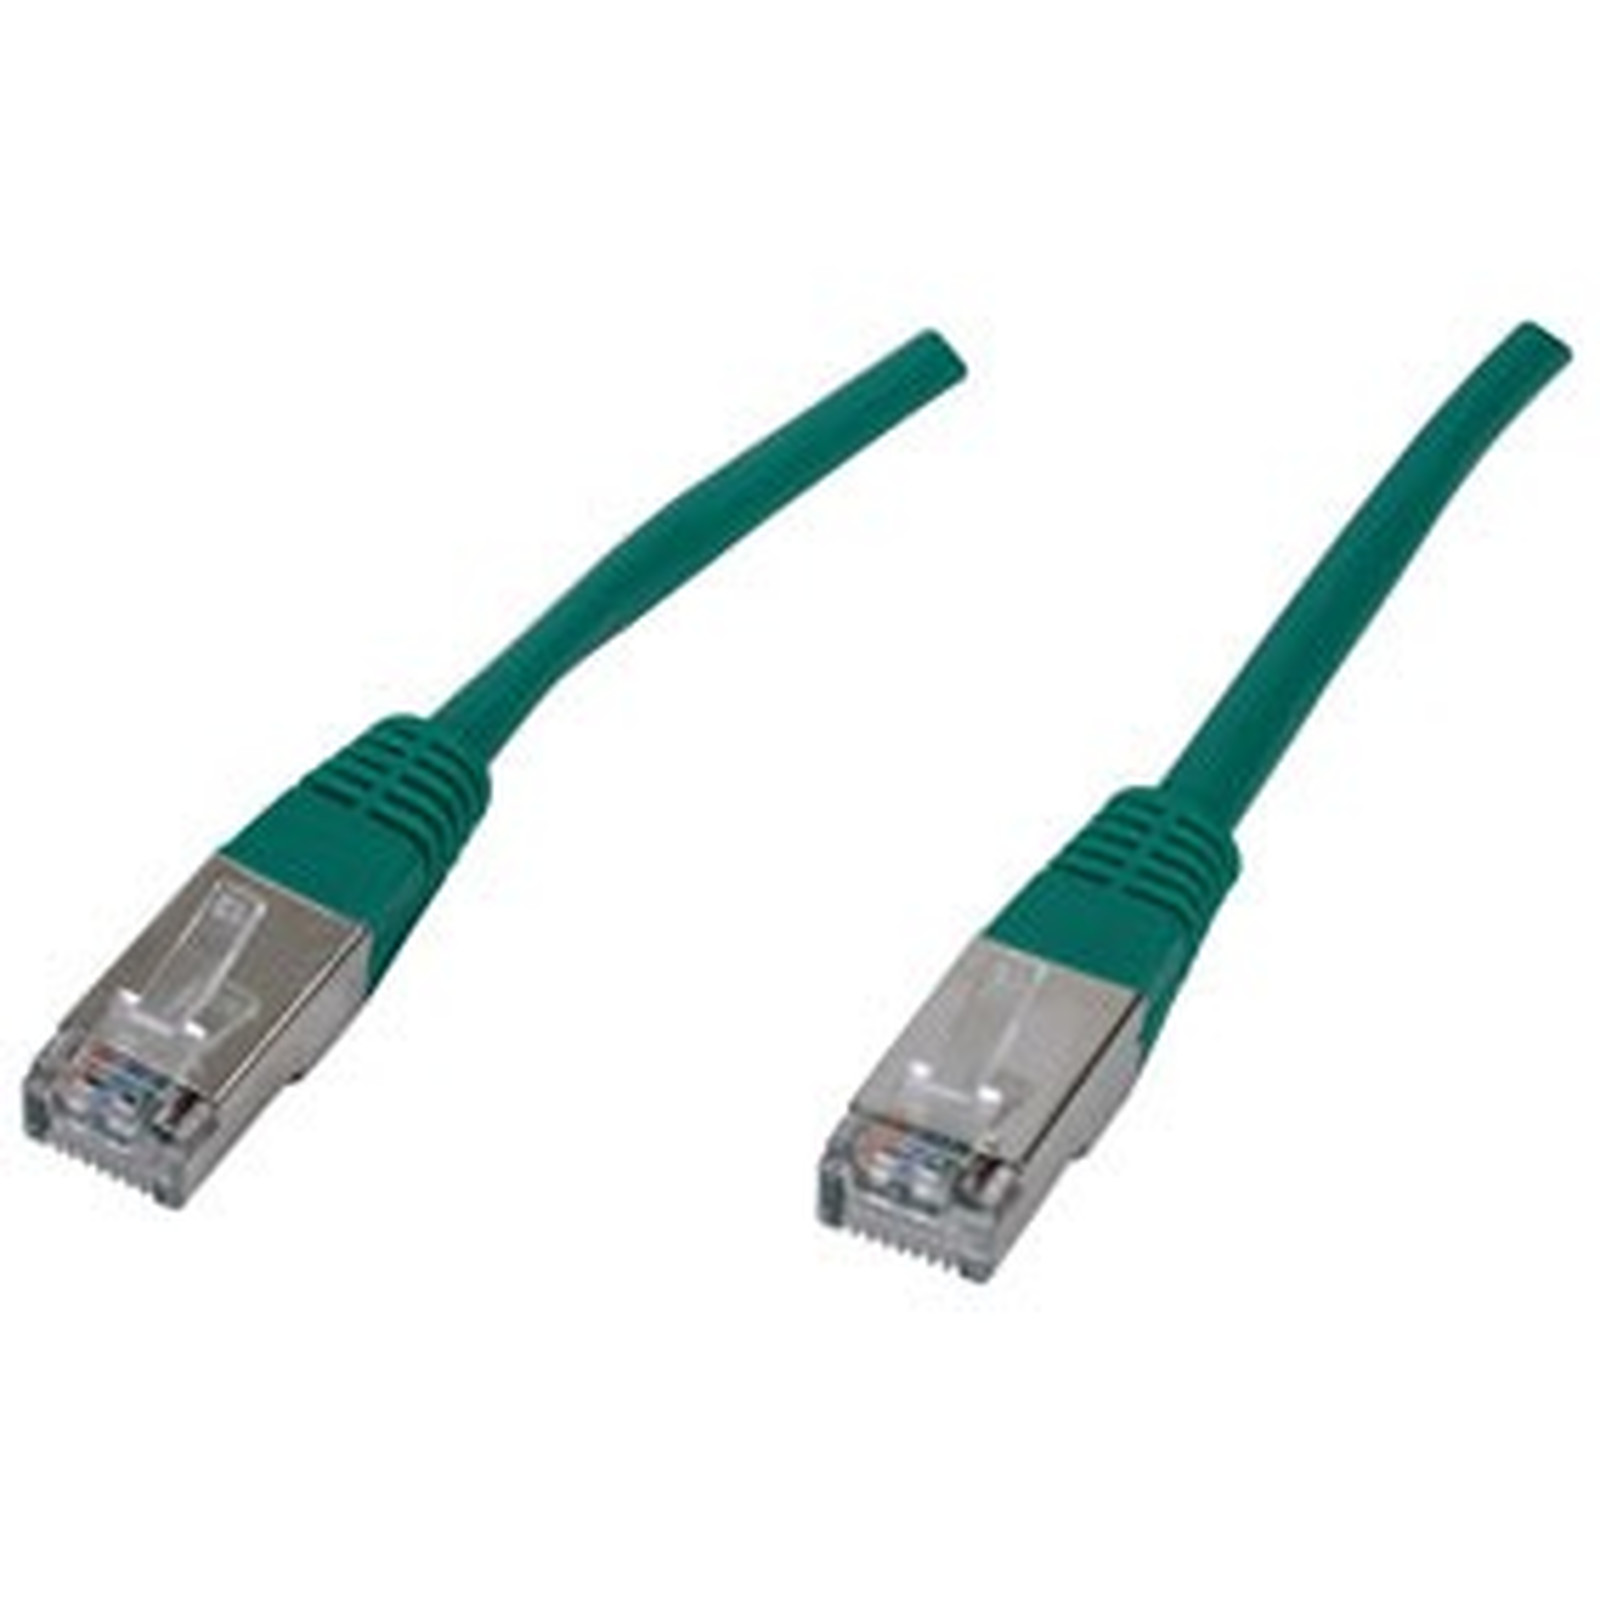 Cable RJ45 categorie 6 F/UTP 1 m (Vert) - Cable RJ45 Generique